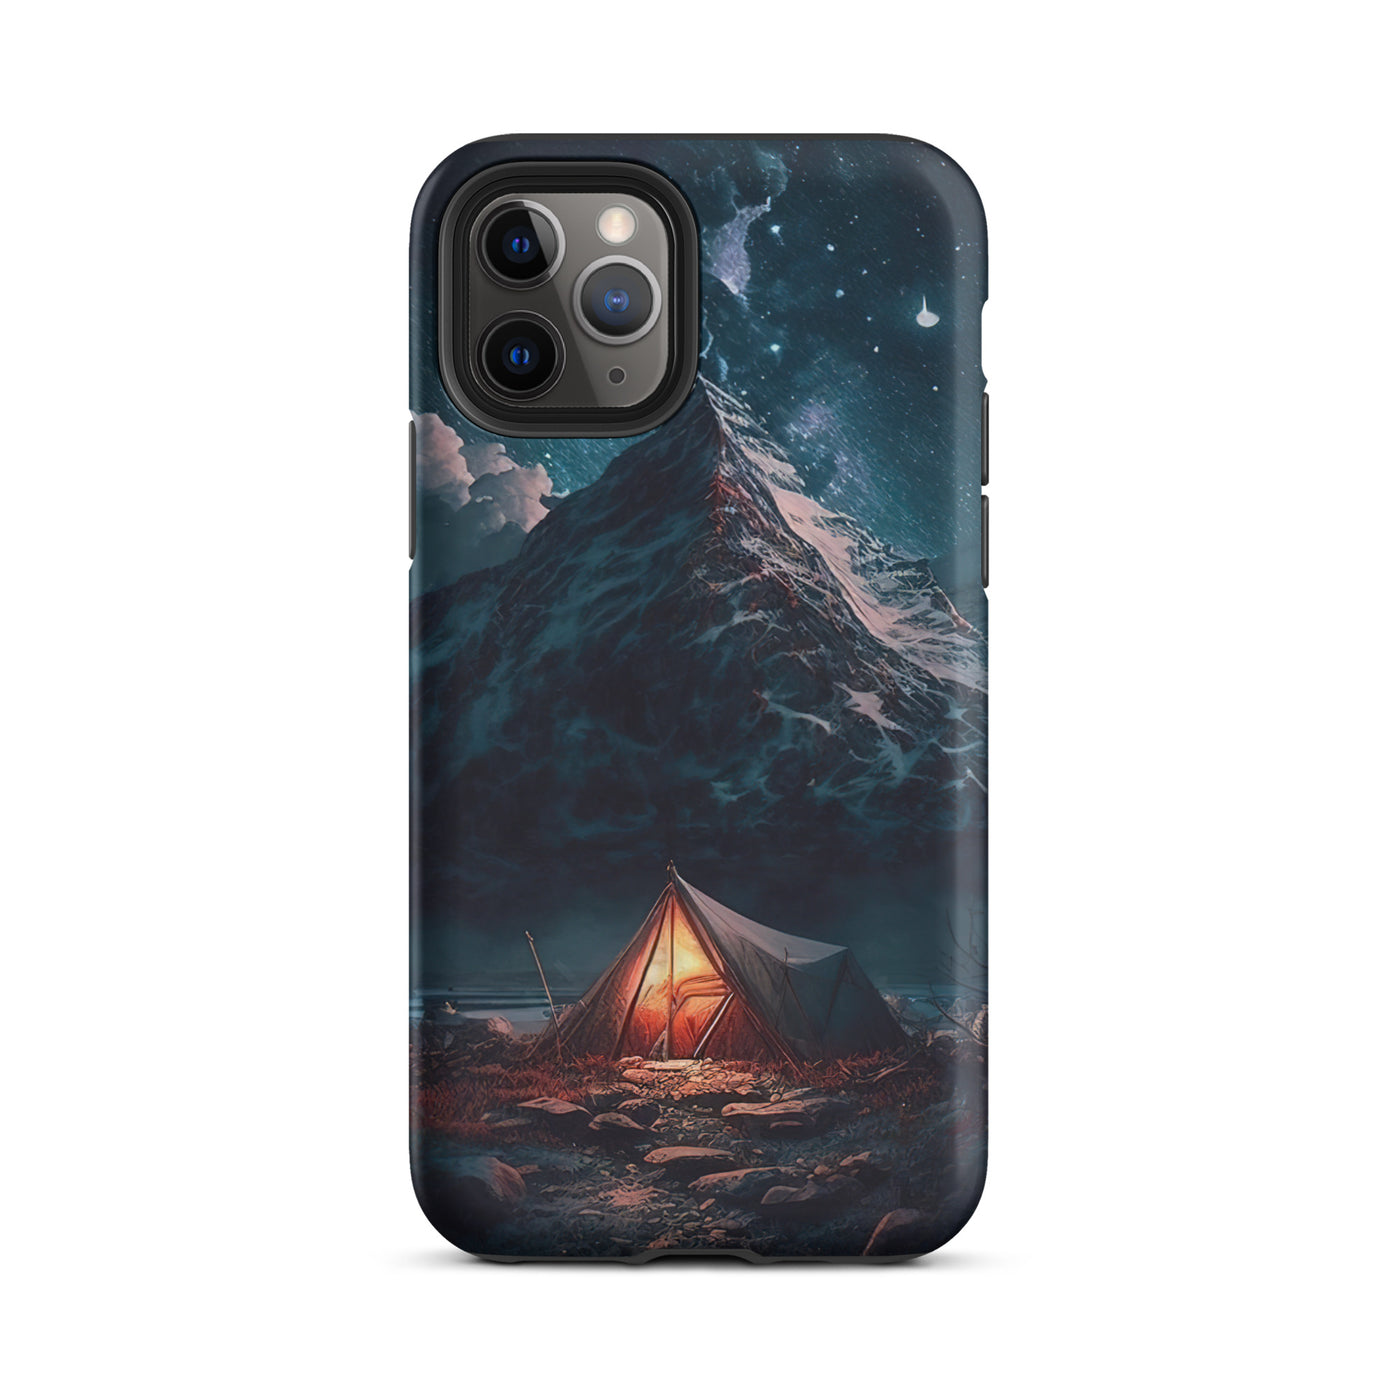 Zelt und Berg in der Nacht - Sterne am Himmel - Landschaftsmalerei - iPhone Schutzhülle (robust) camping xxx iPhone 11 Pro